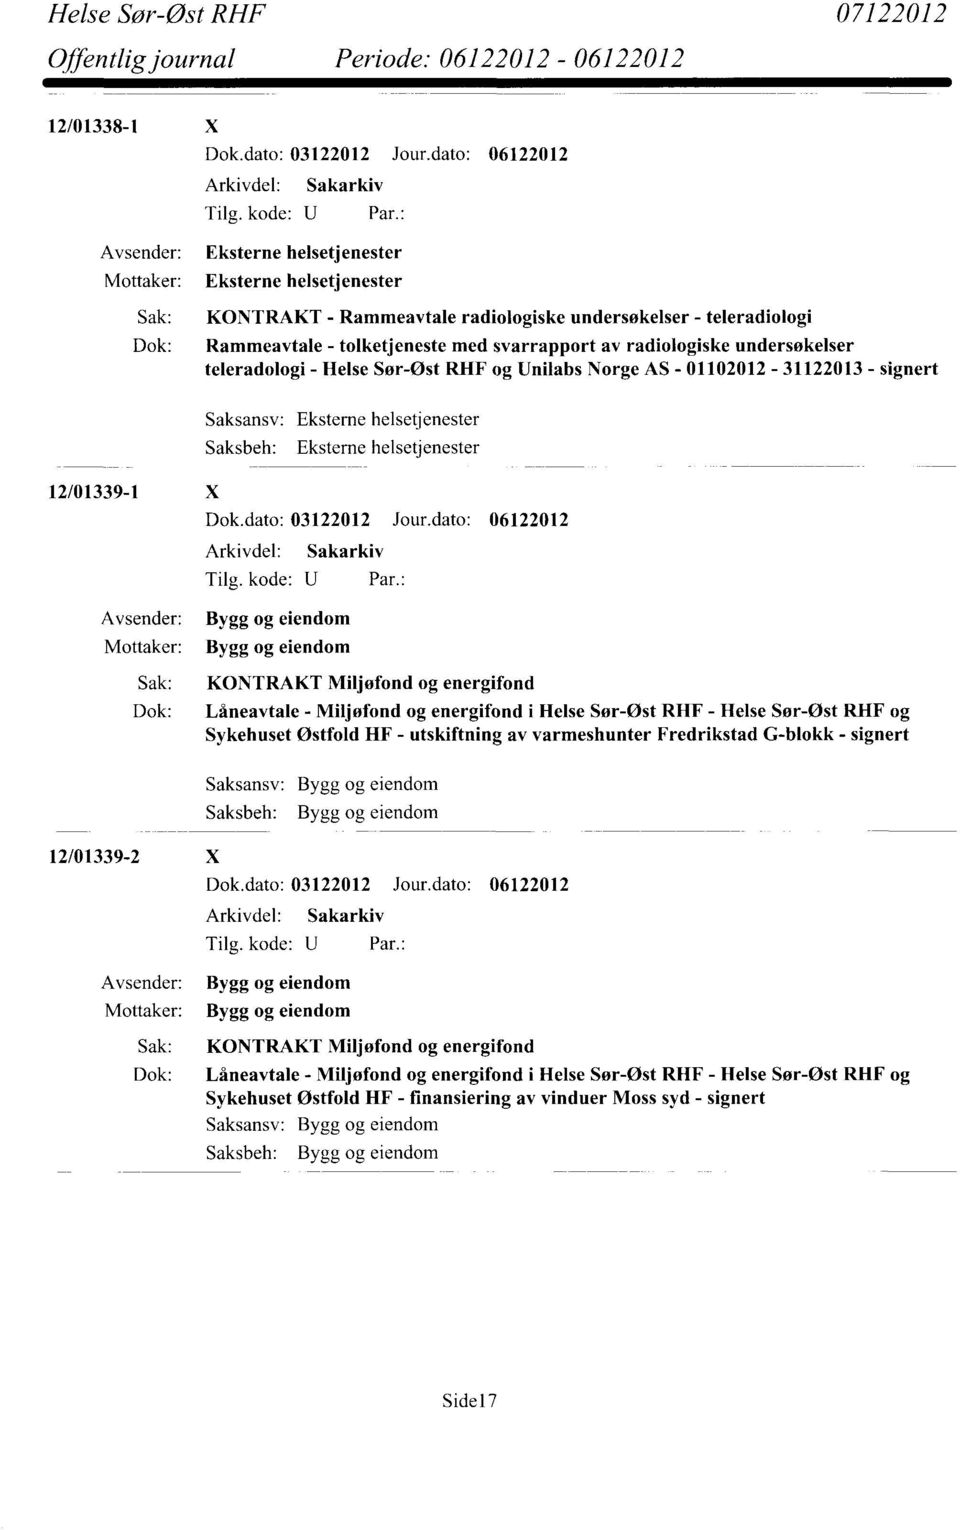 undersøkelser teleradologi - Helse Sør-Øst RHF og Unilabs Norge AS - 01102012-31122013 - signert 12/01339-1 X Eksteme helsetjenester Dok.dato: 03122012 Jour.